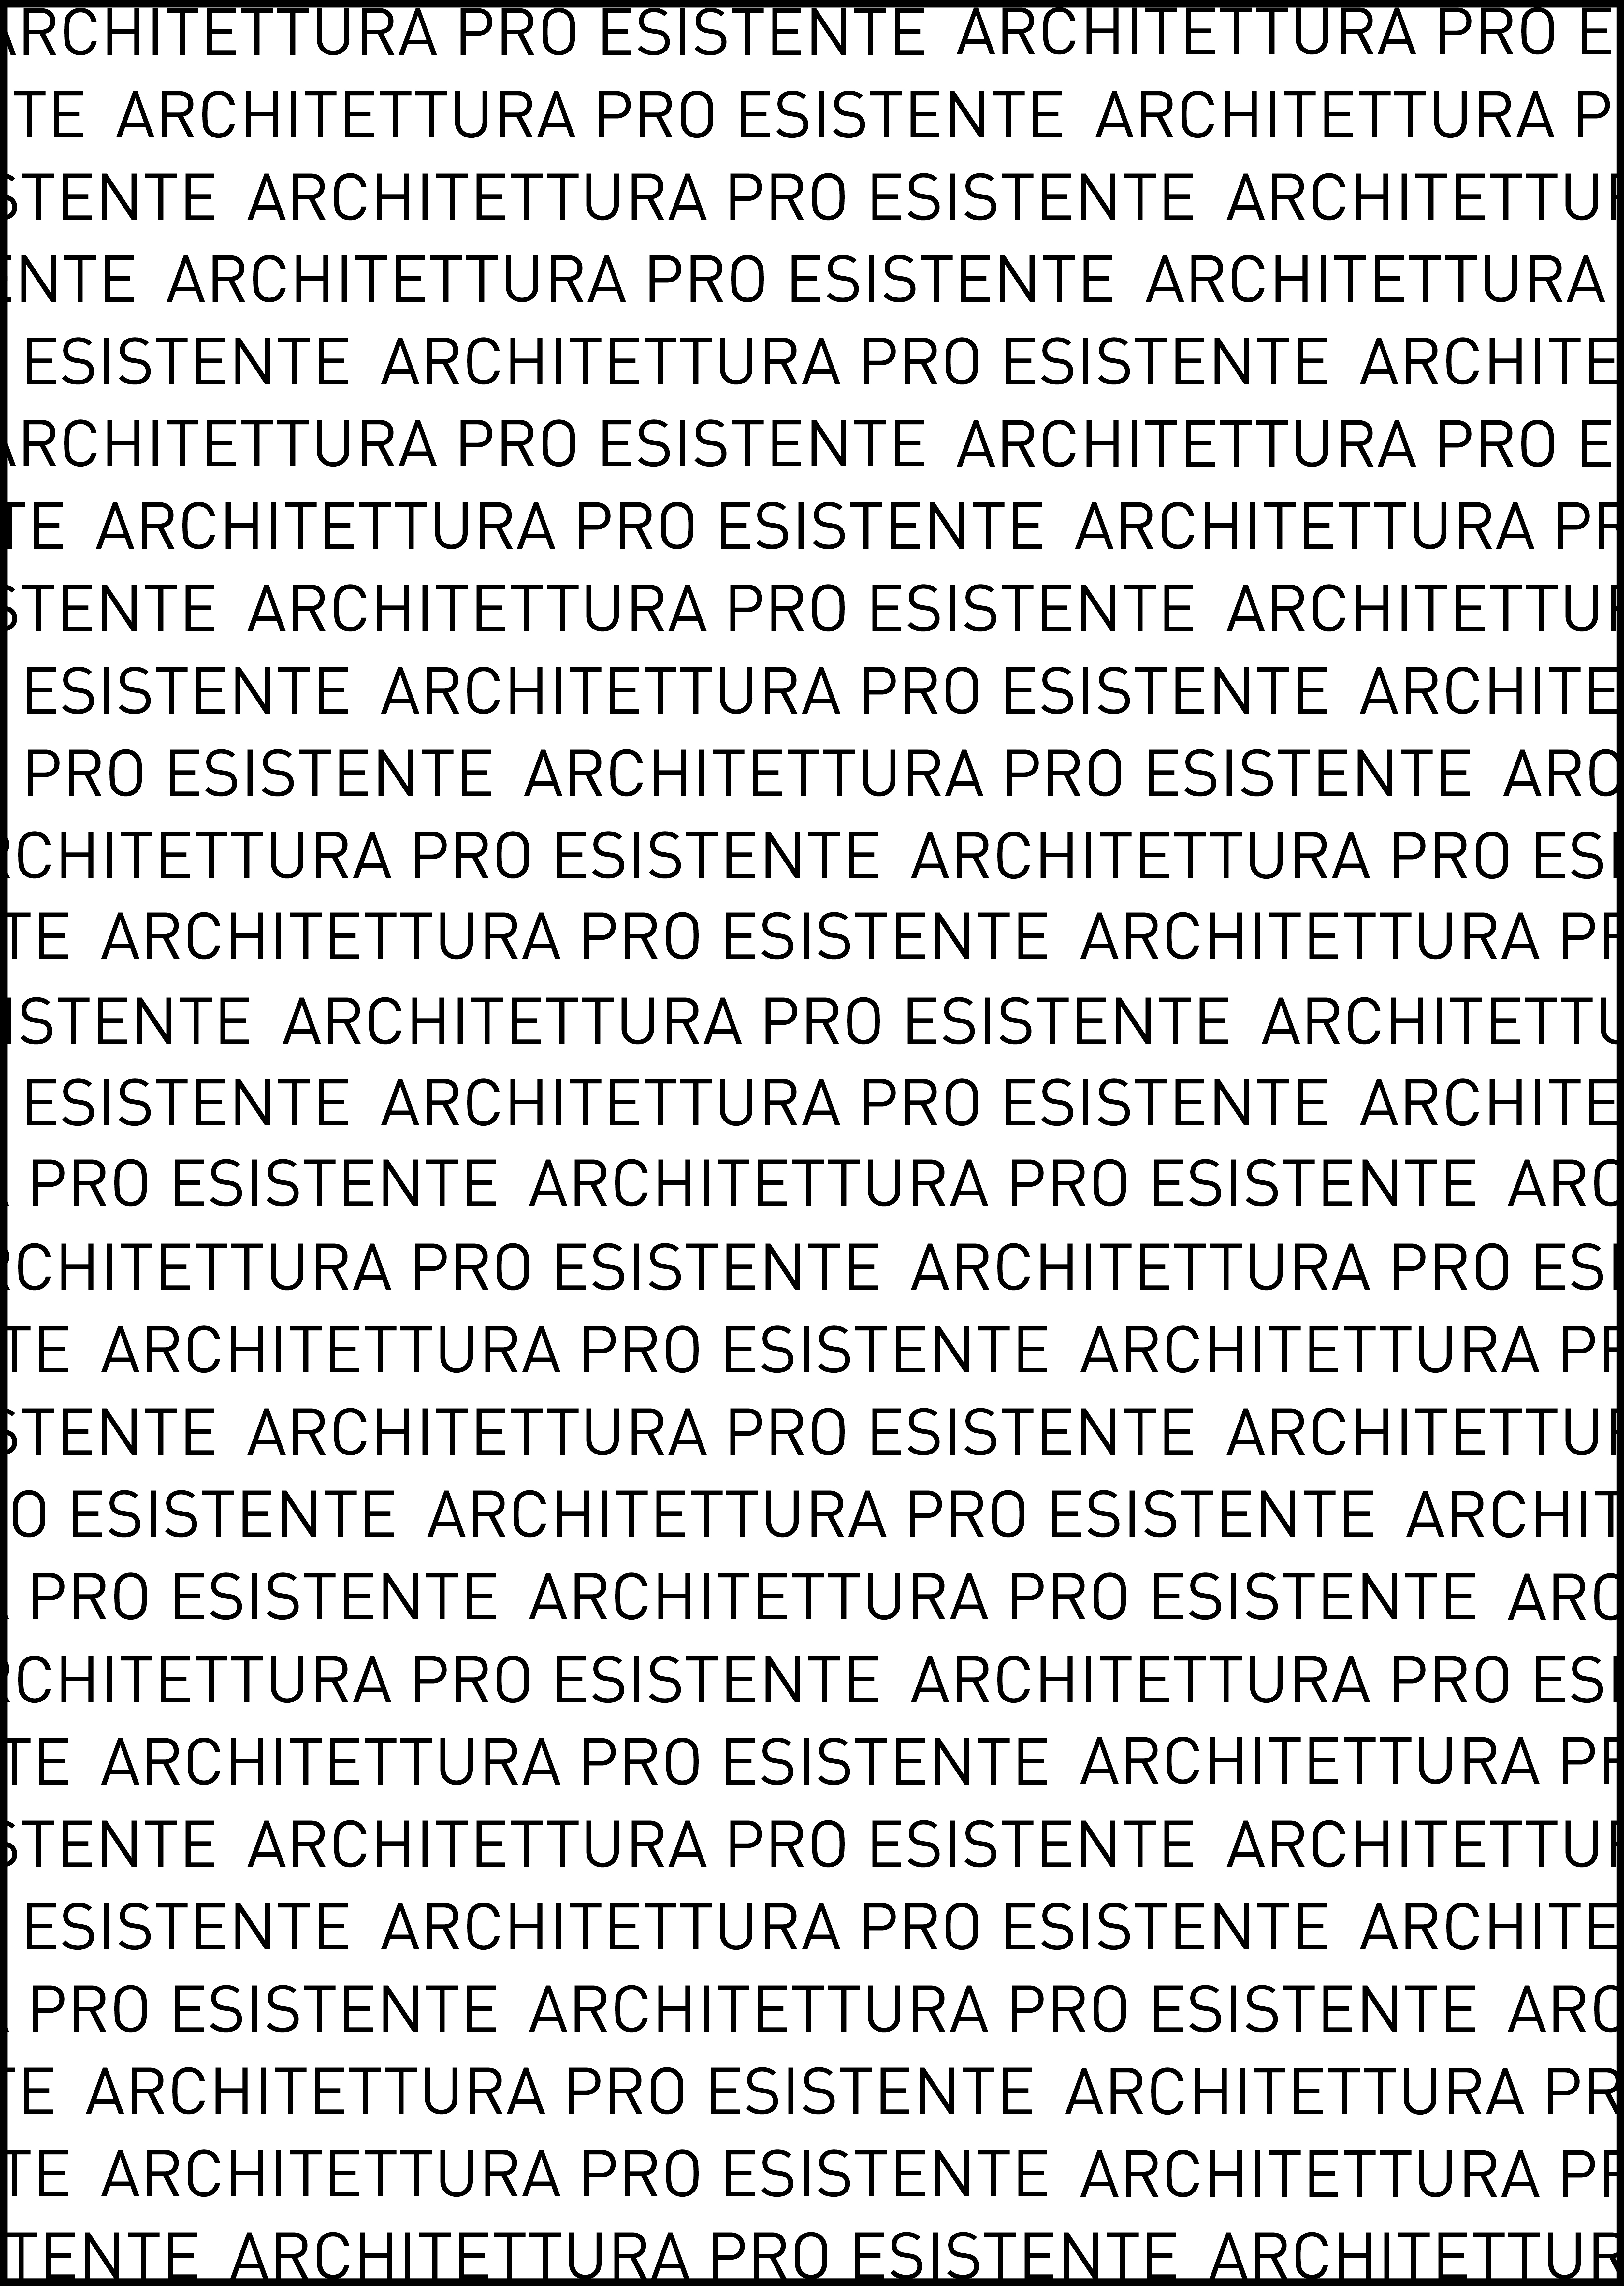 Architettura pro esistente